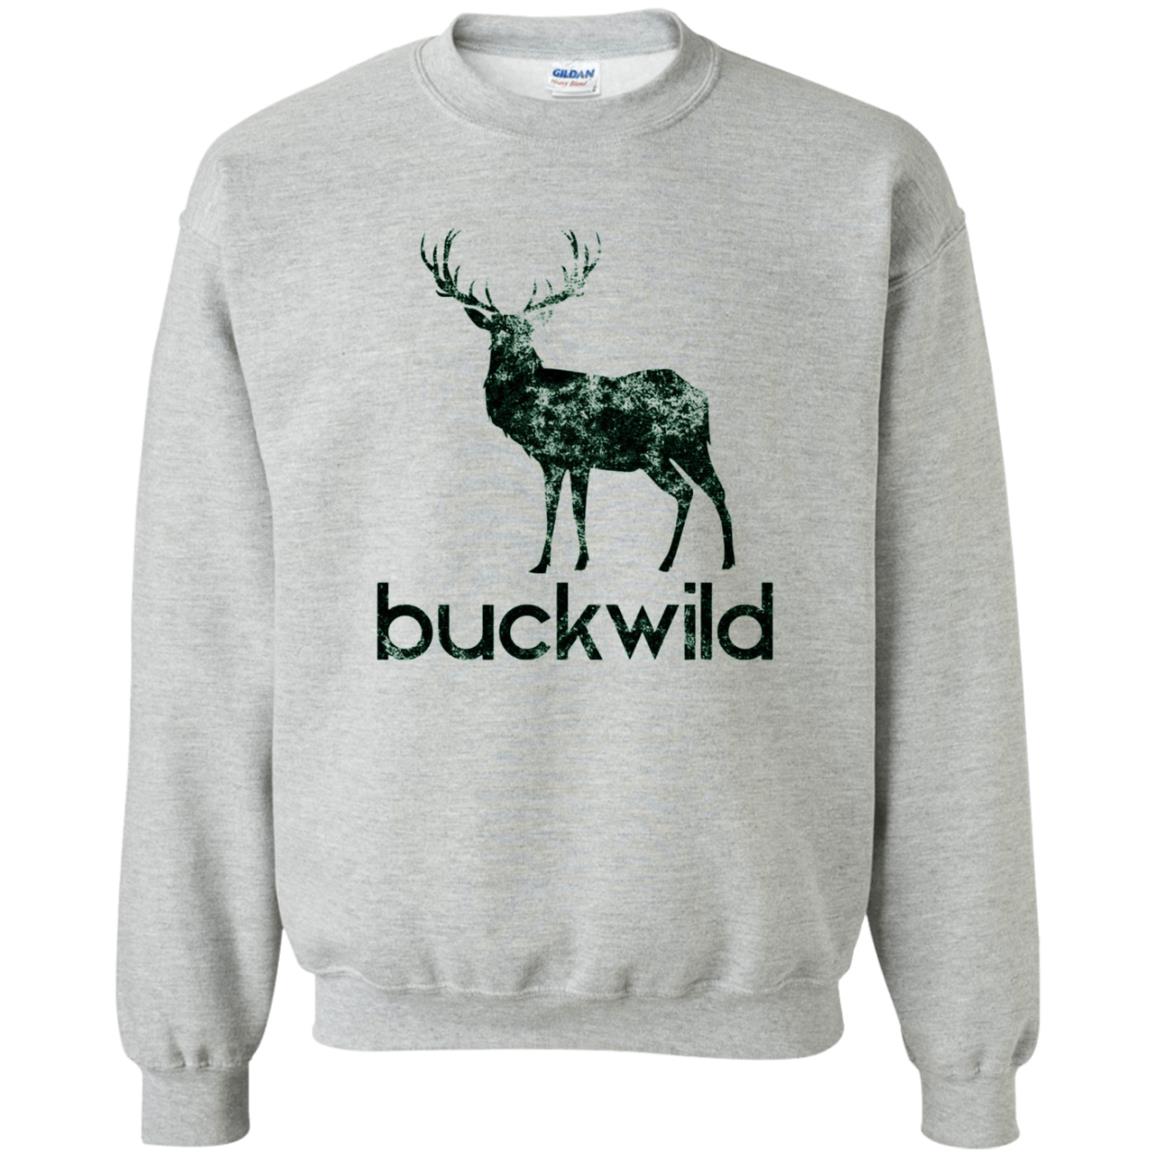 buck wild sweatshirt - sport grey